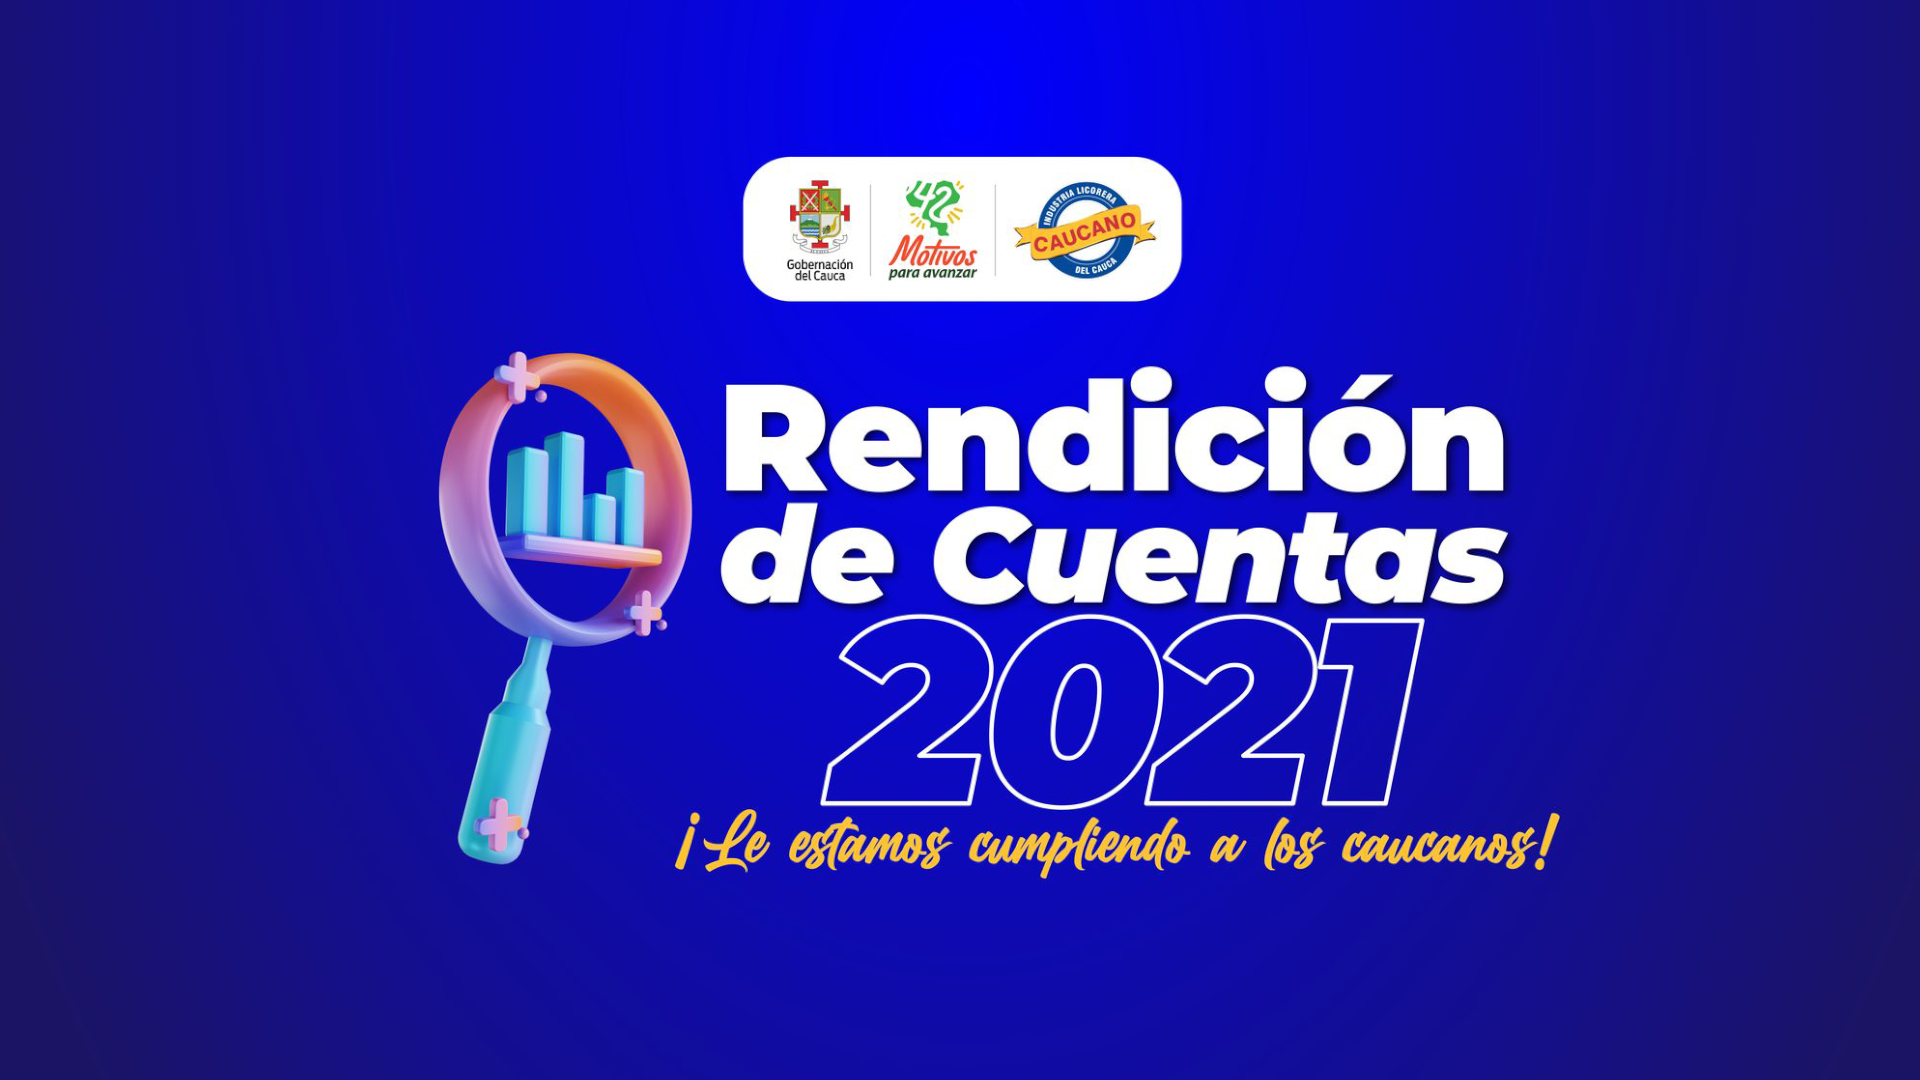 Rendición de Cuentas 2021 Industria Licorera del Cauca